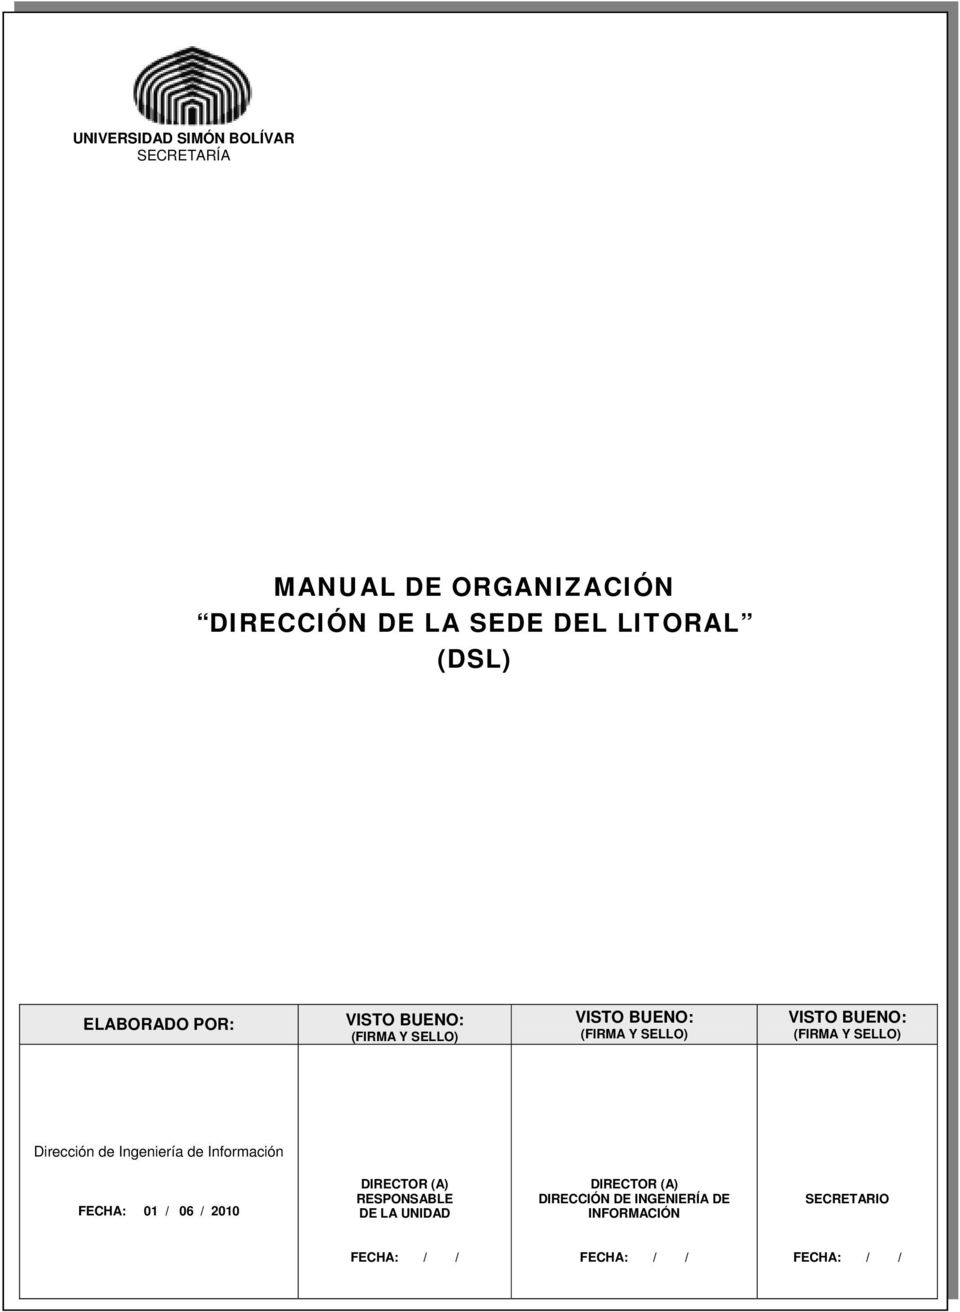 de Información FECHA: 01 / 06 / 2010 DIRECTOR (A) RESPONSABLE DE LA UNIDAD DIRECTOR